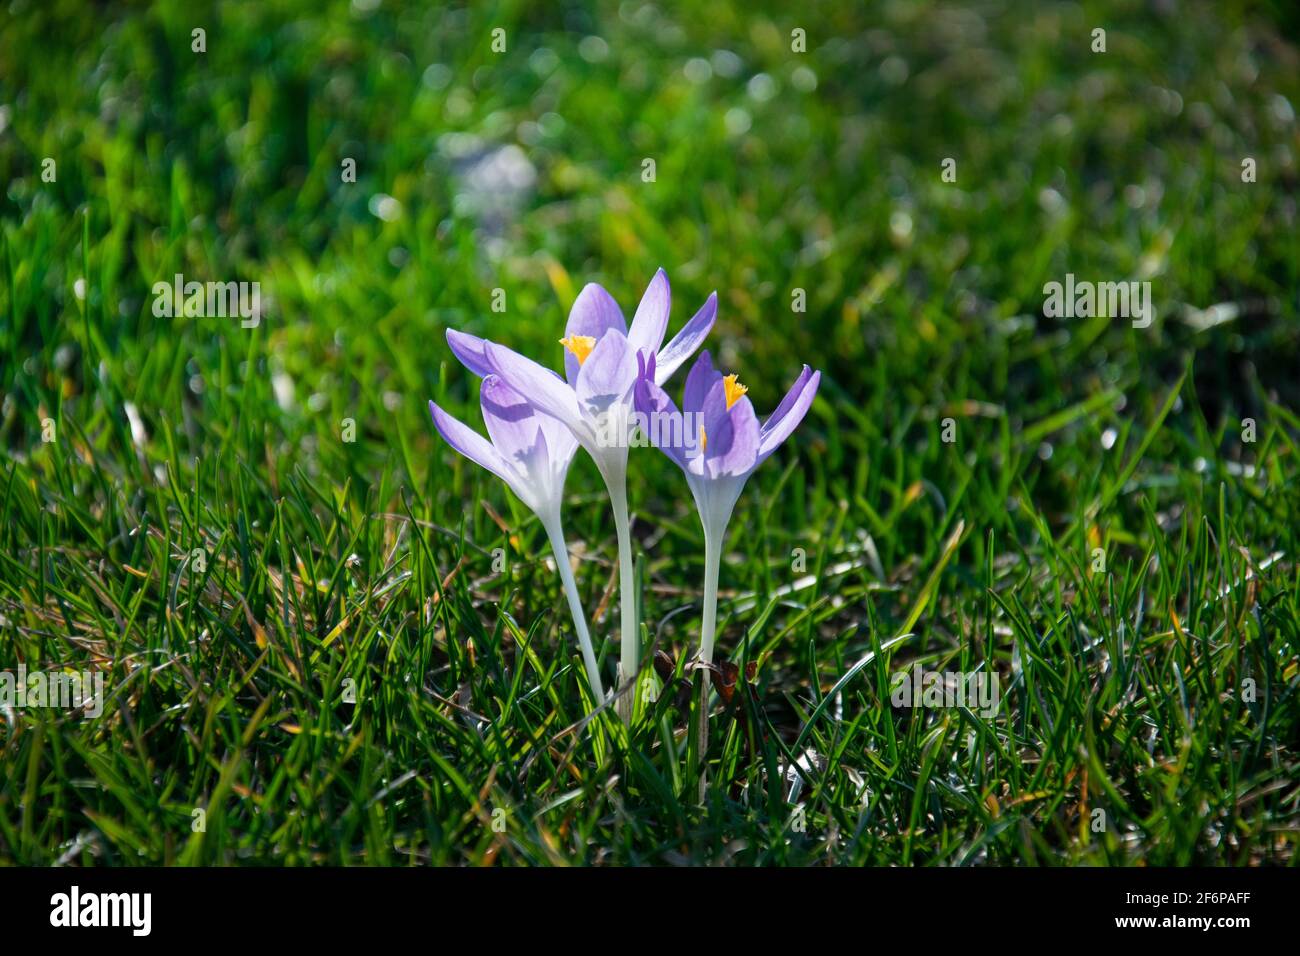 Wunderschöne frühlingshafte violette, weiße, gelbe Krokusse, riesige Krokusse auf einem grünen Rasen. Frühlingsblumen. Primeln. Anfang Frühling. Stockfoto